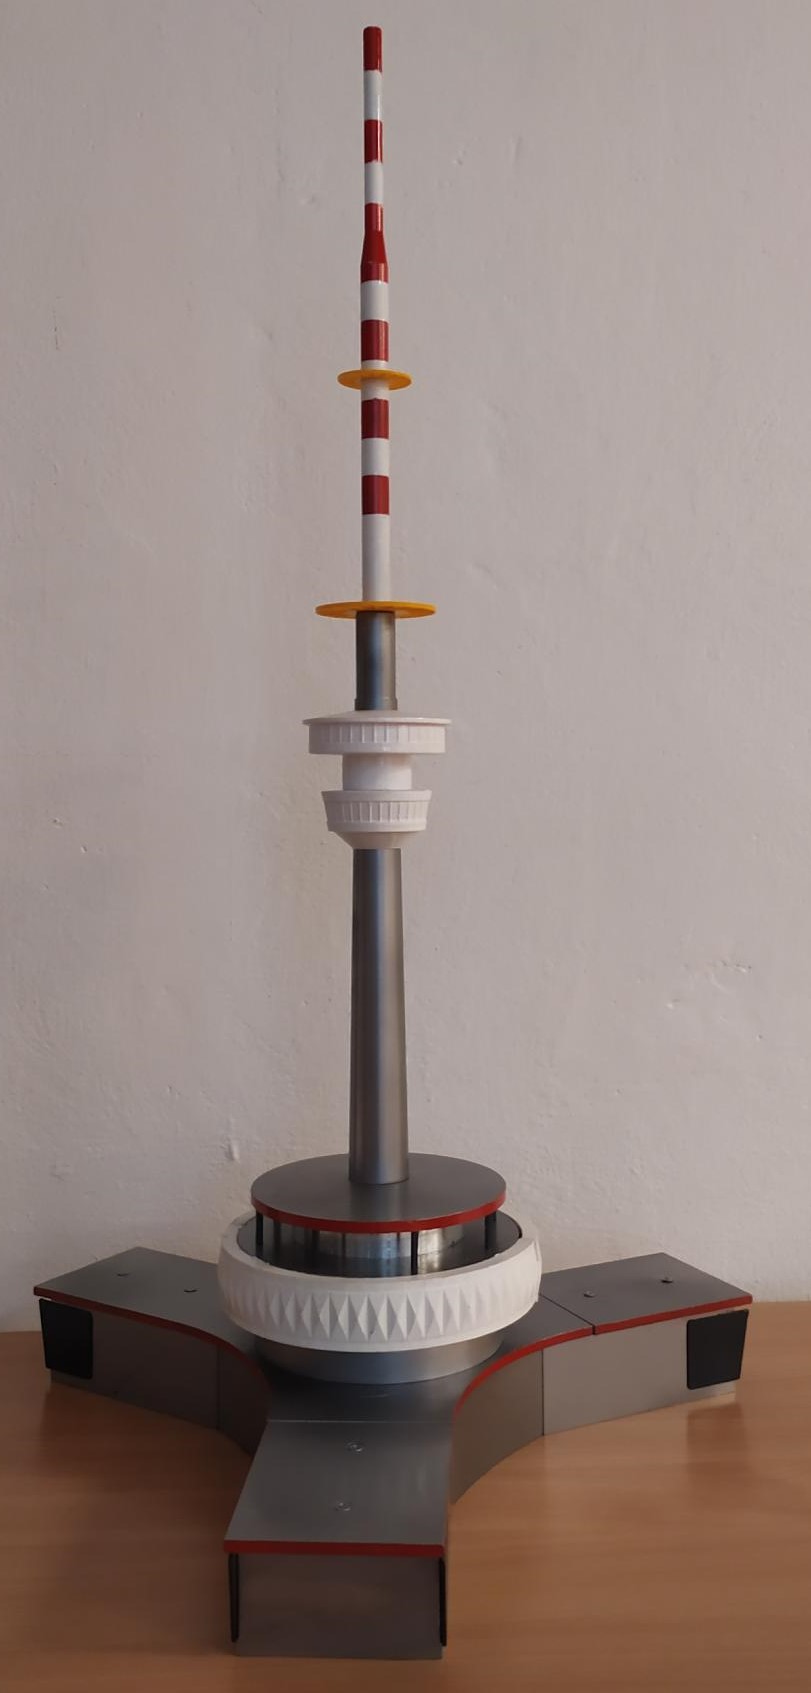 Model Pradědu, který vznikl pomocí 3D tisku a CNC obrábění kovových dílů. Foto: Radek Rončák